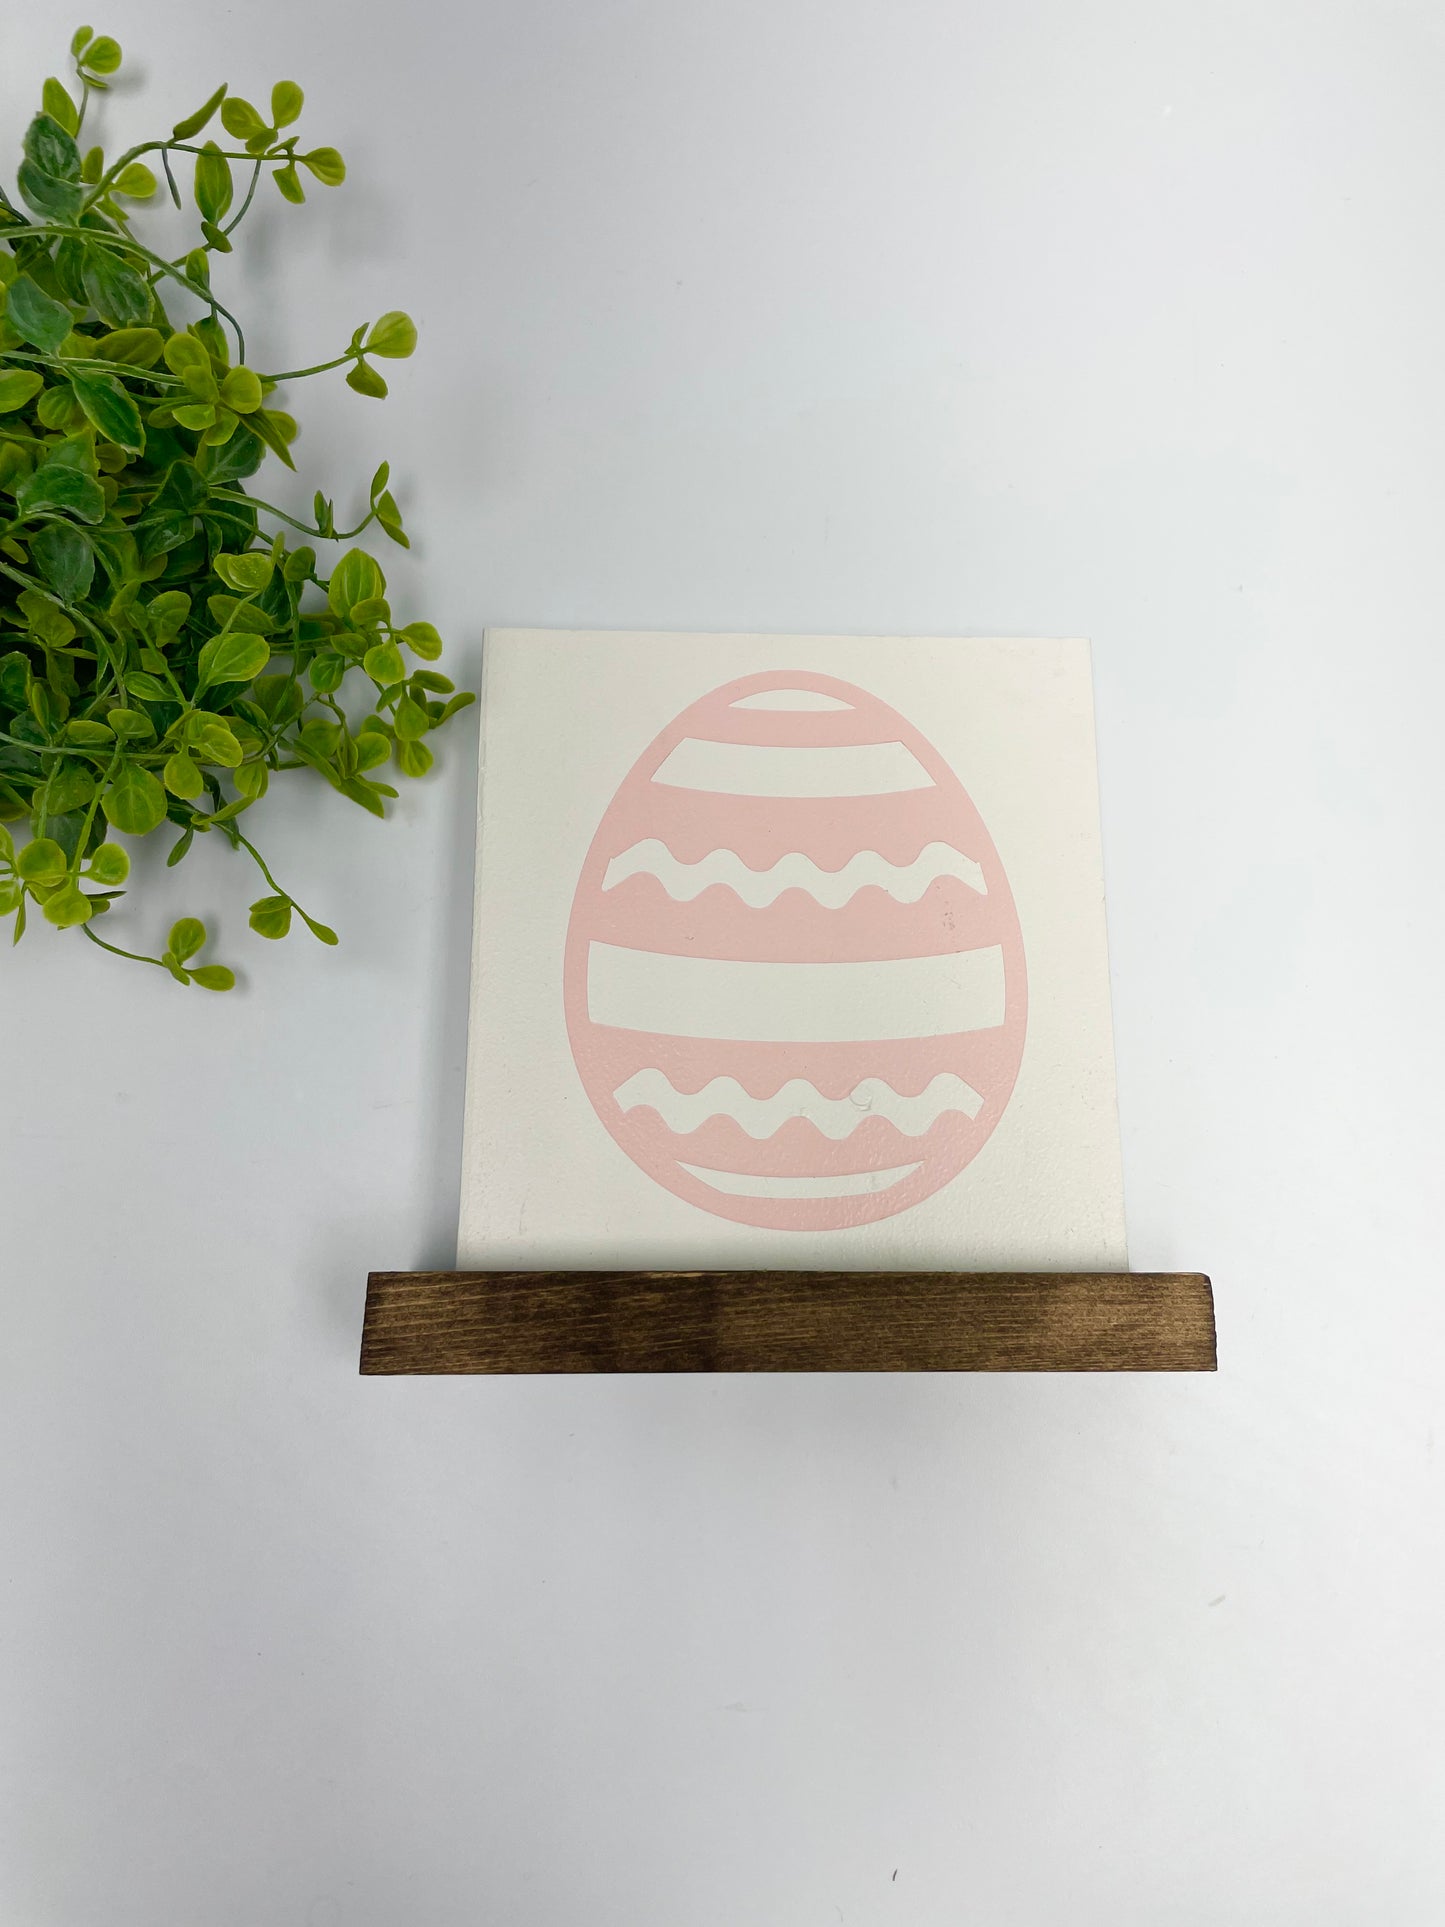 Handmade Signs - Shelf Sitter Large Egg